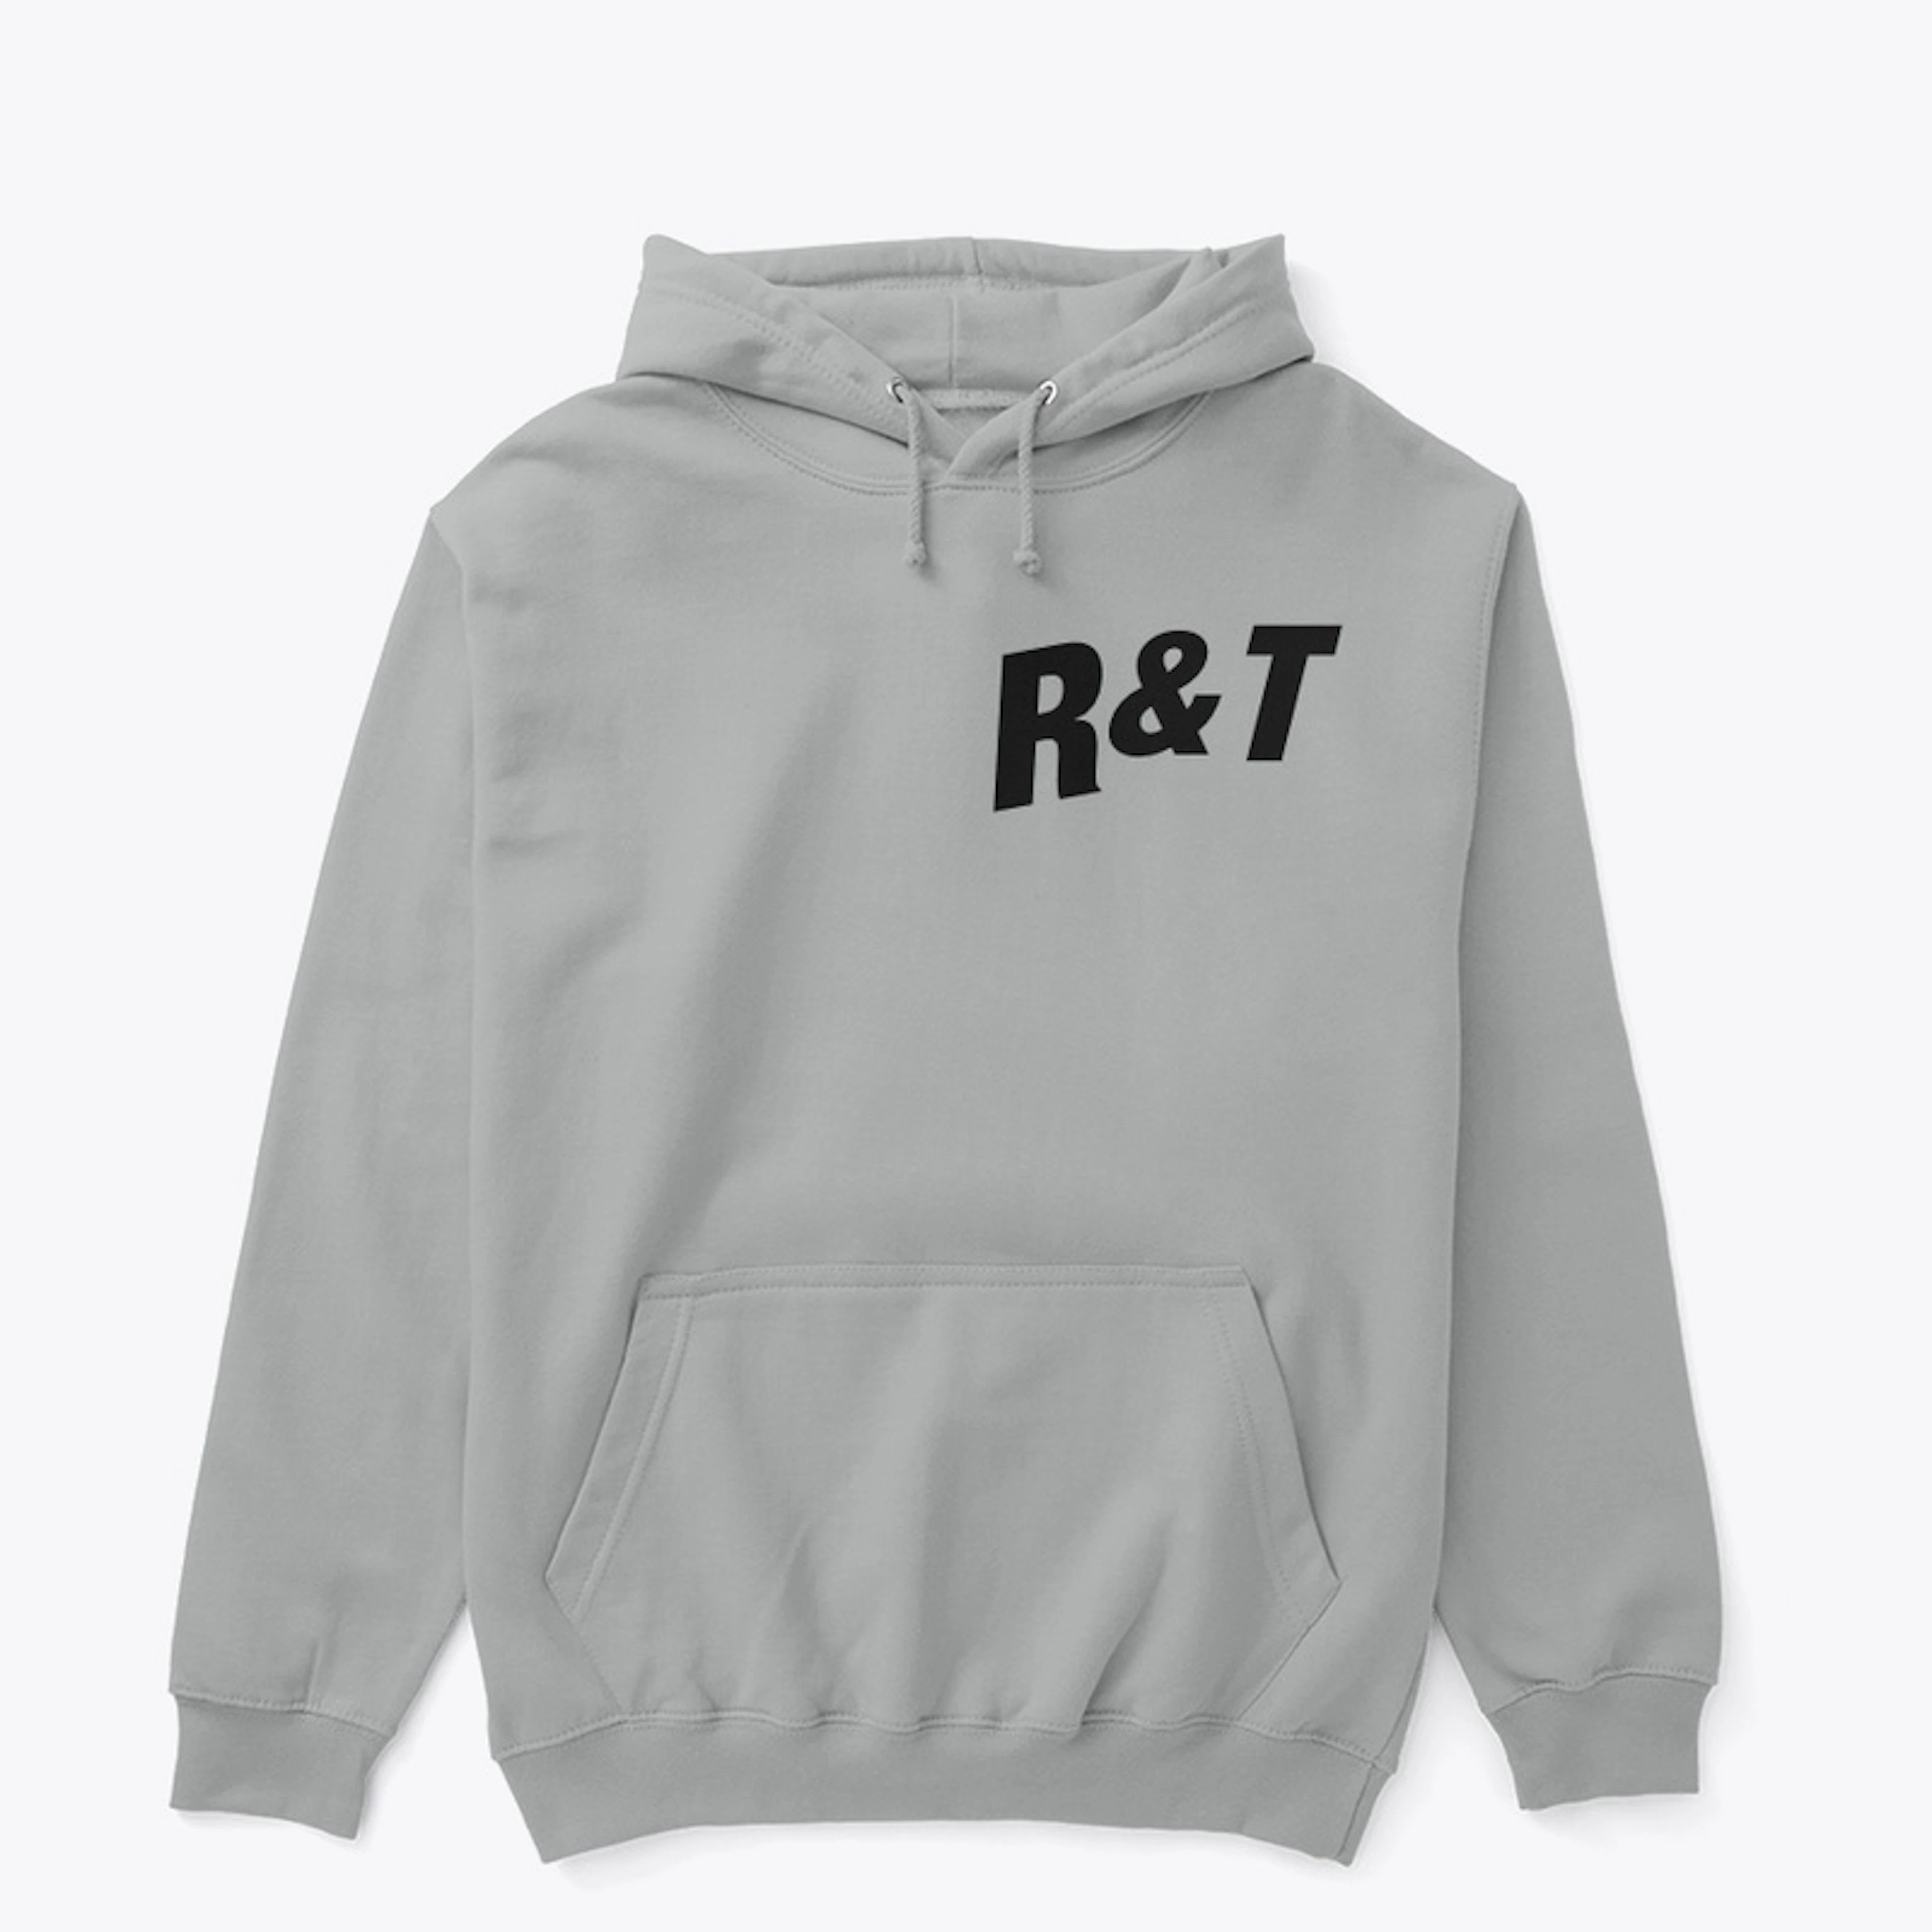 R&T Fashion